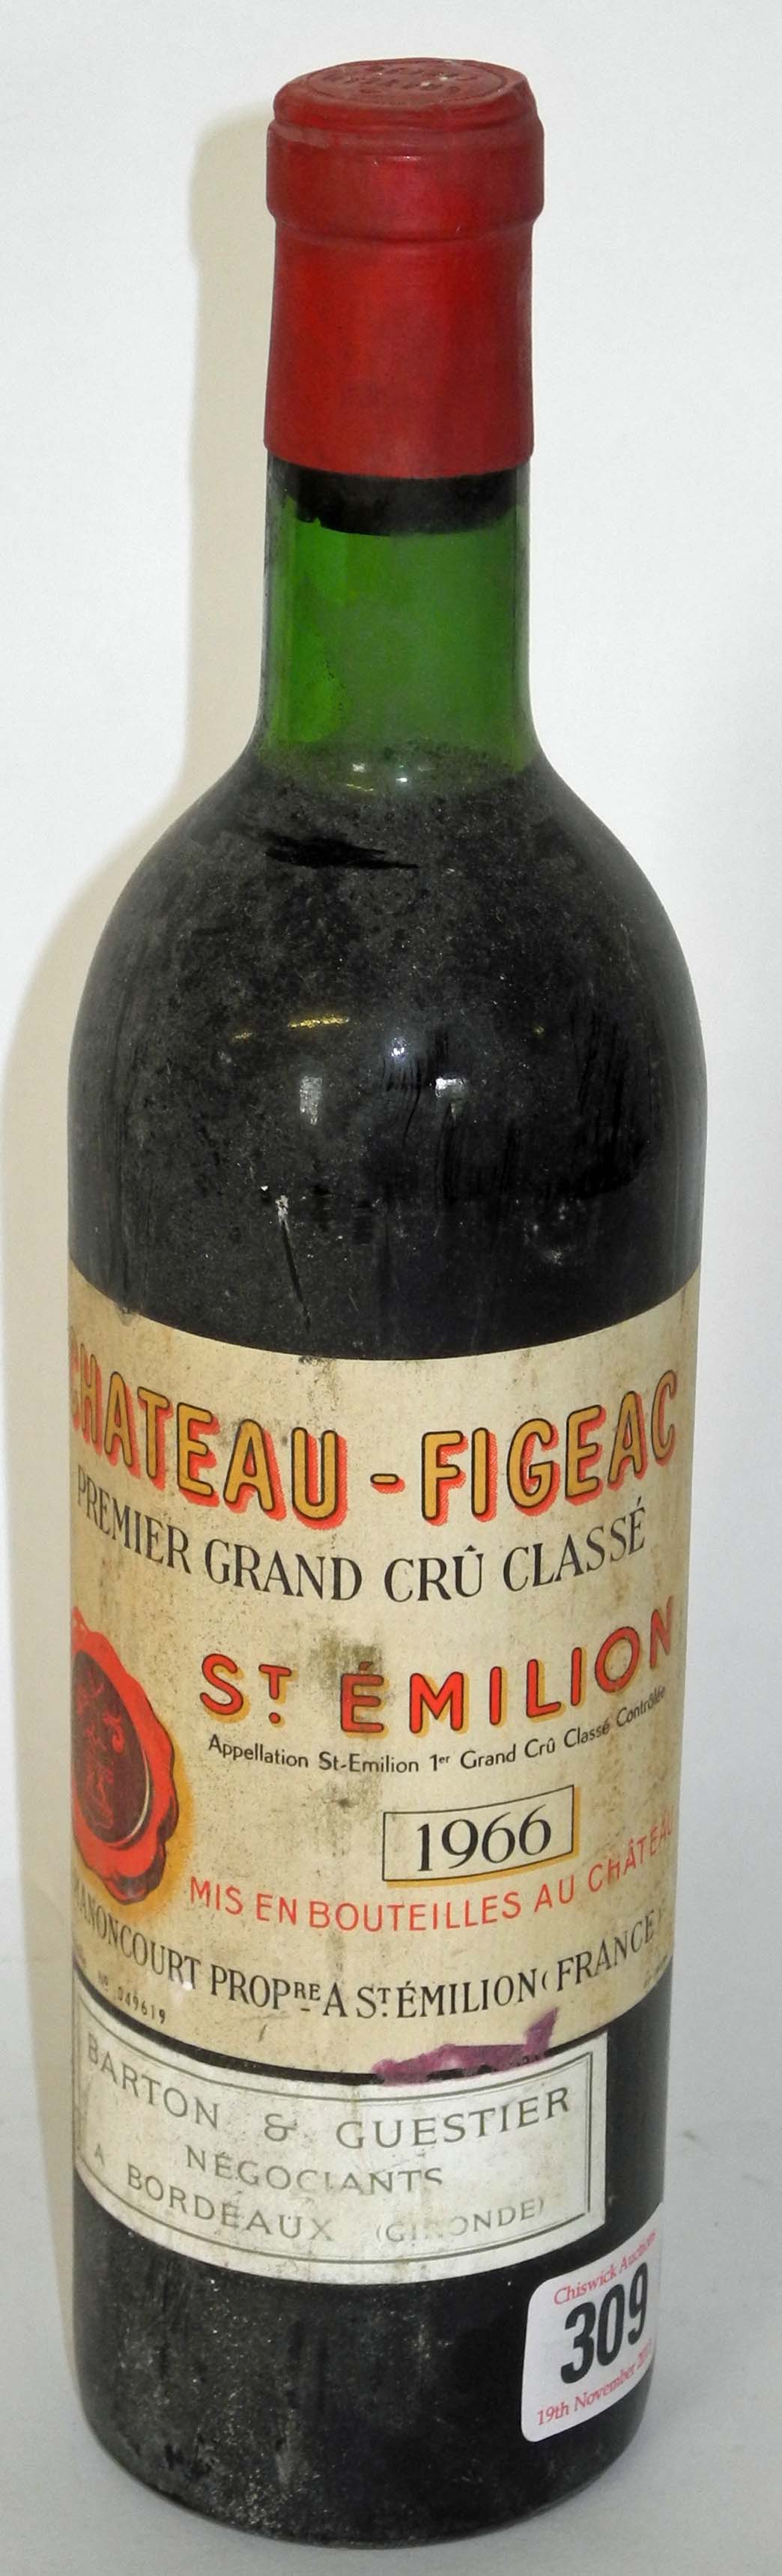 Chateau Figeac, 1966, St Emilion, Premiere Grand Cru, a single bottle.